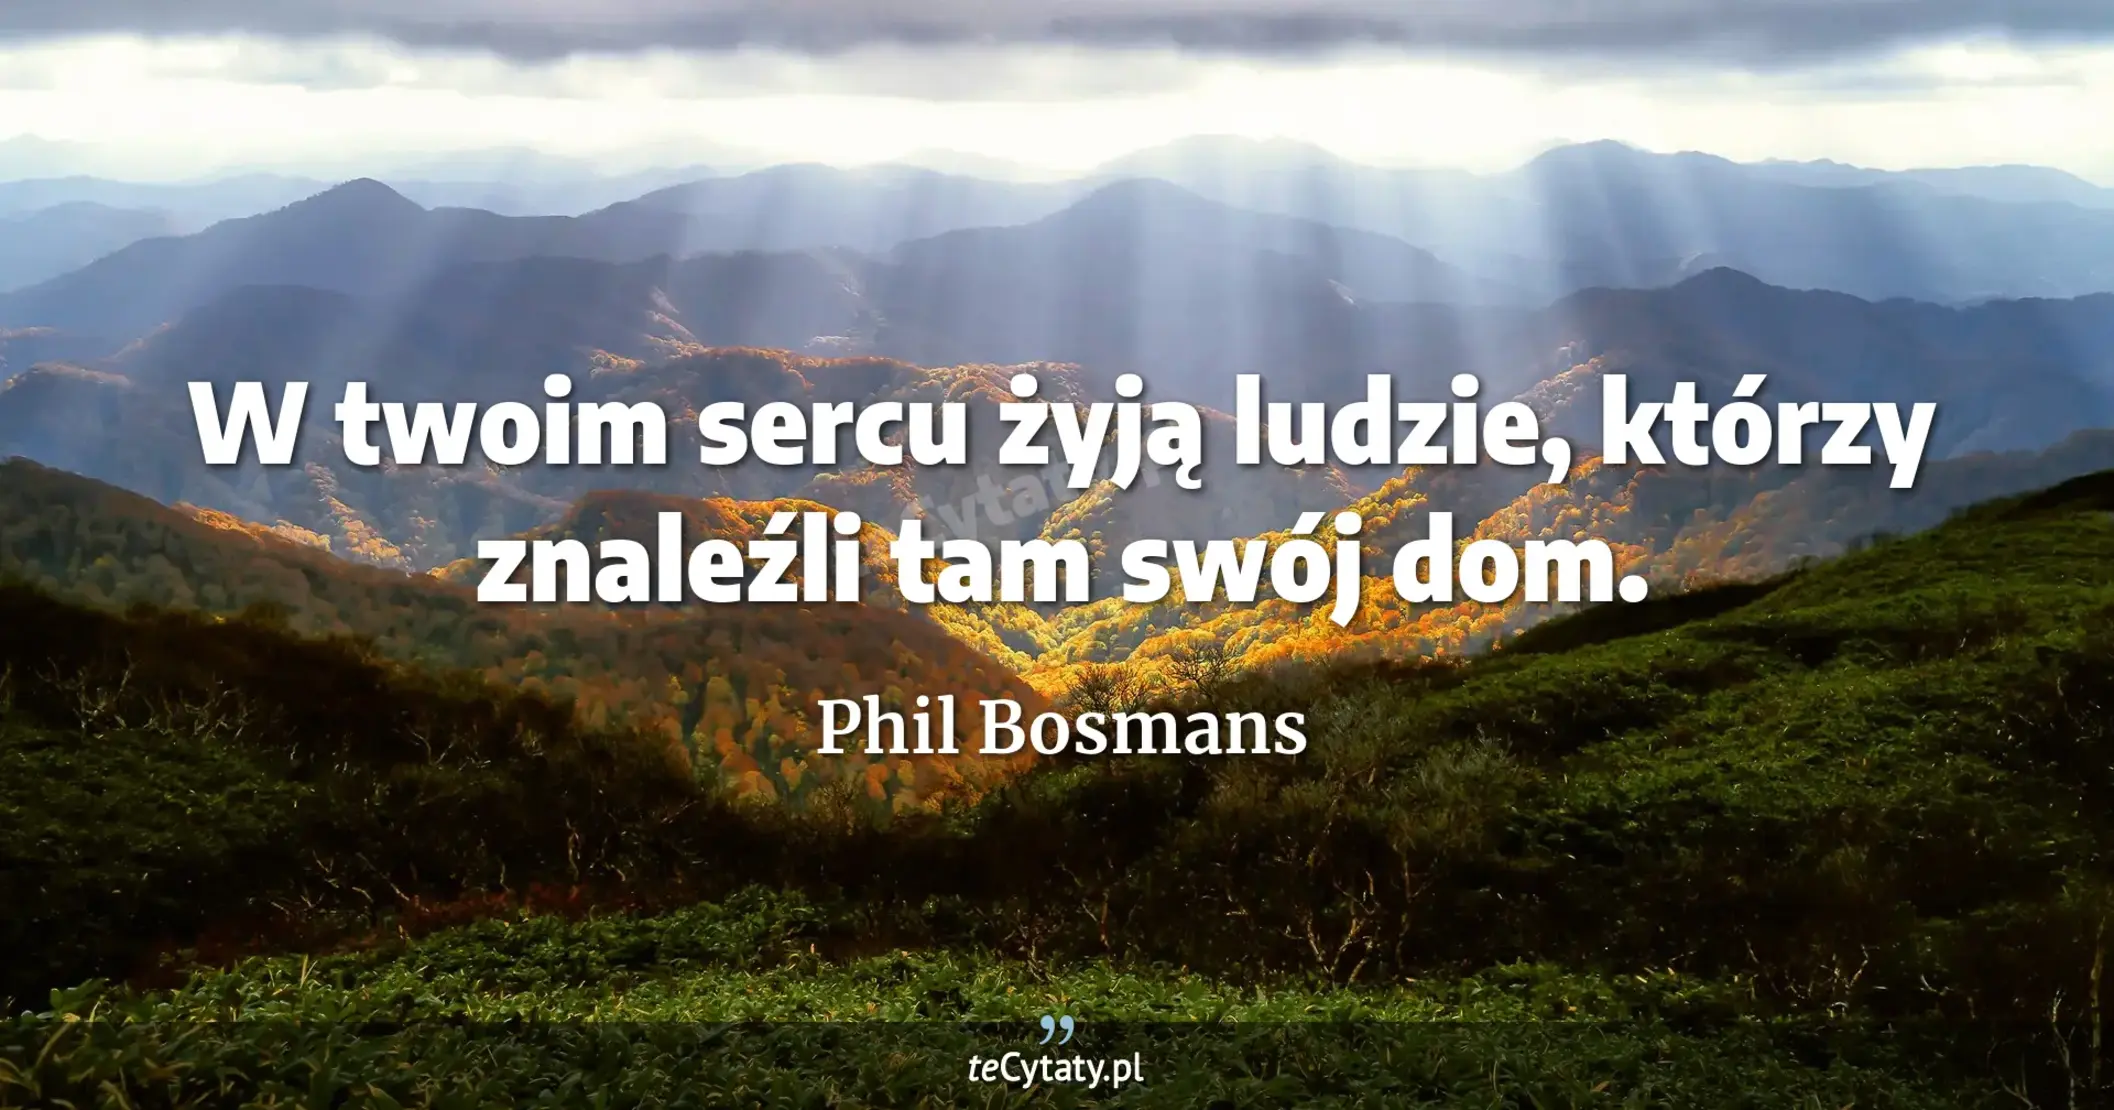 W twoim sercu żyją ludzie, którzy znaleźli tam swój dom. - Phil Bosmans